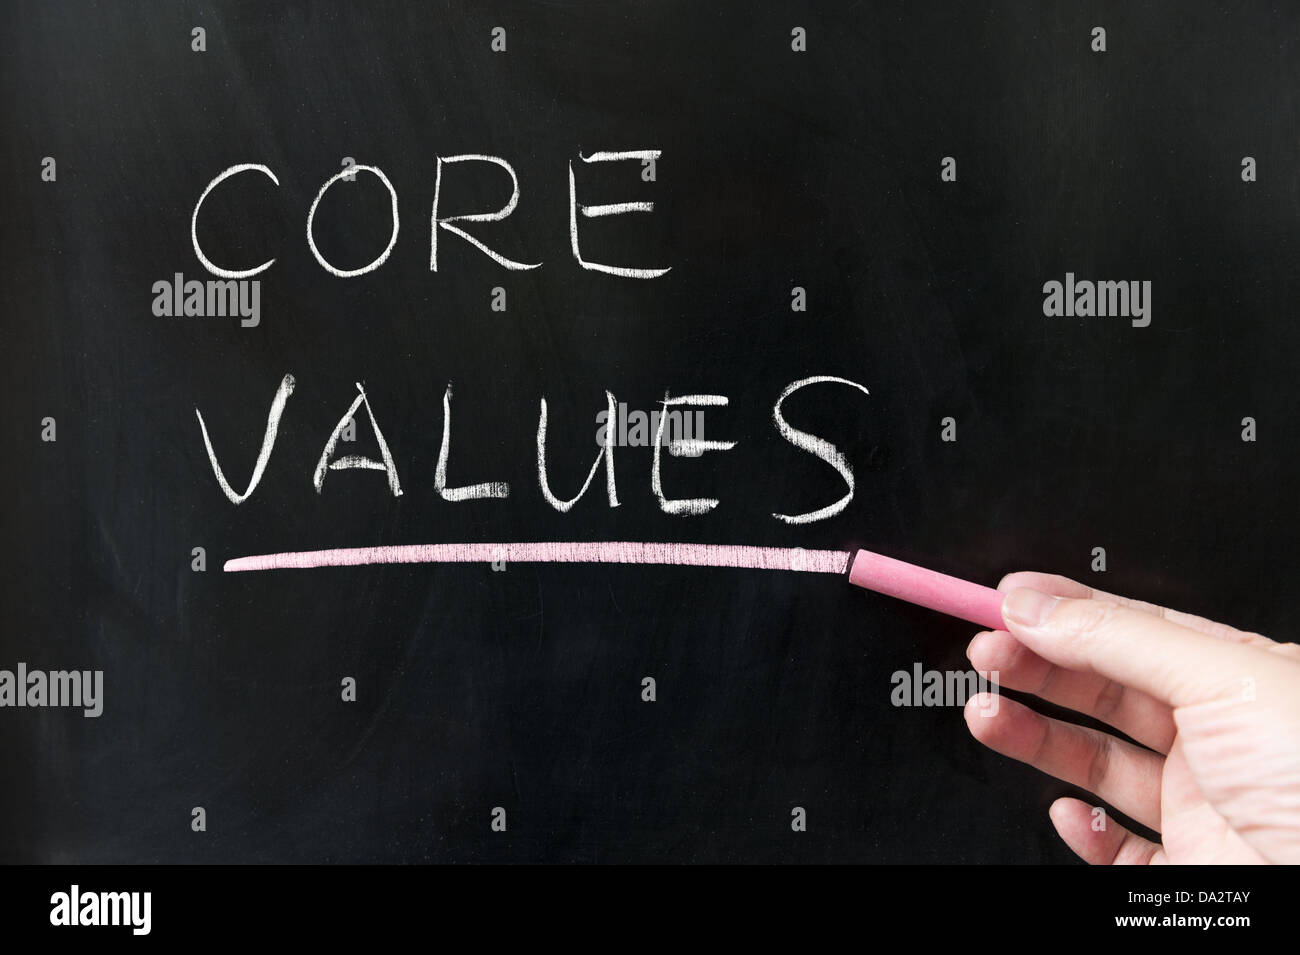 Core values words written on blackboard Stock Photo